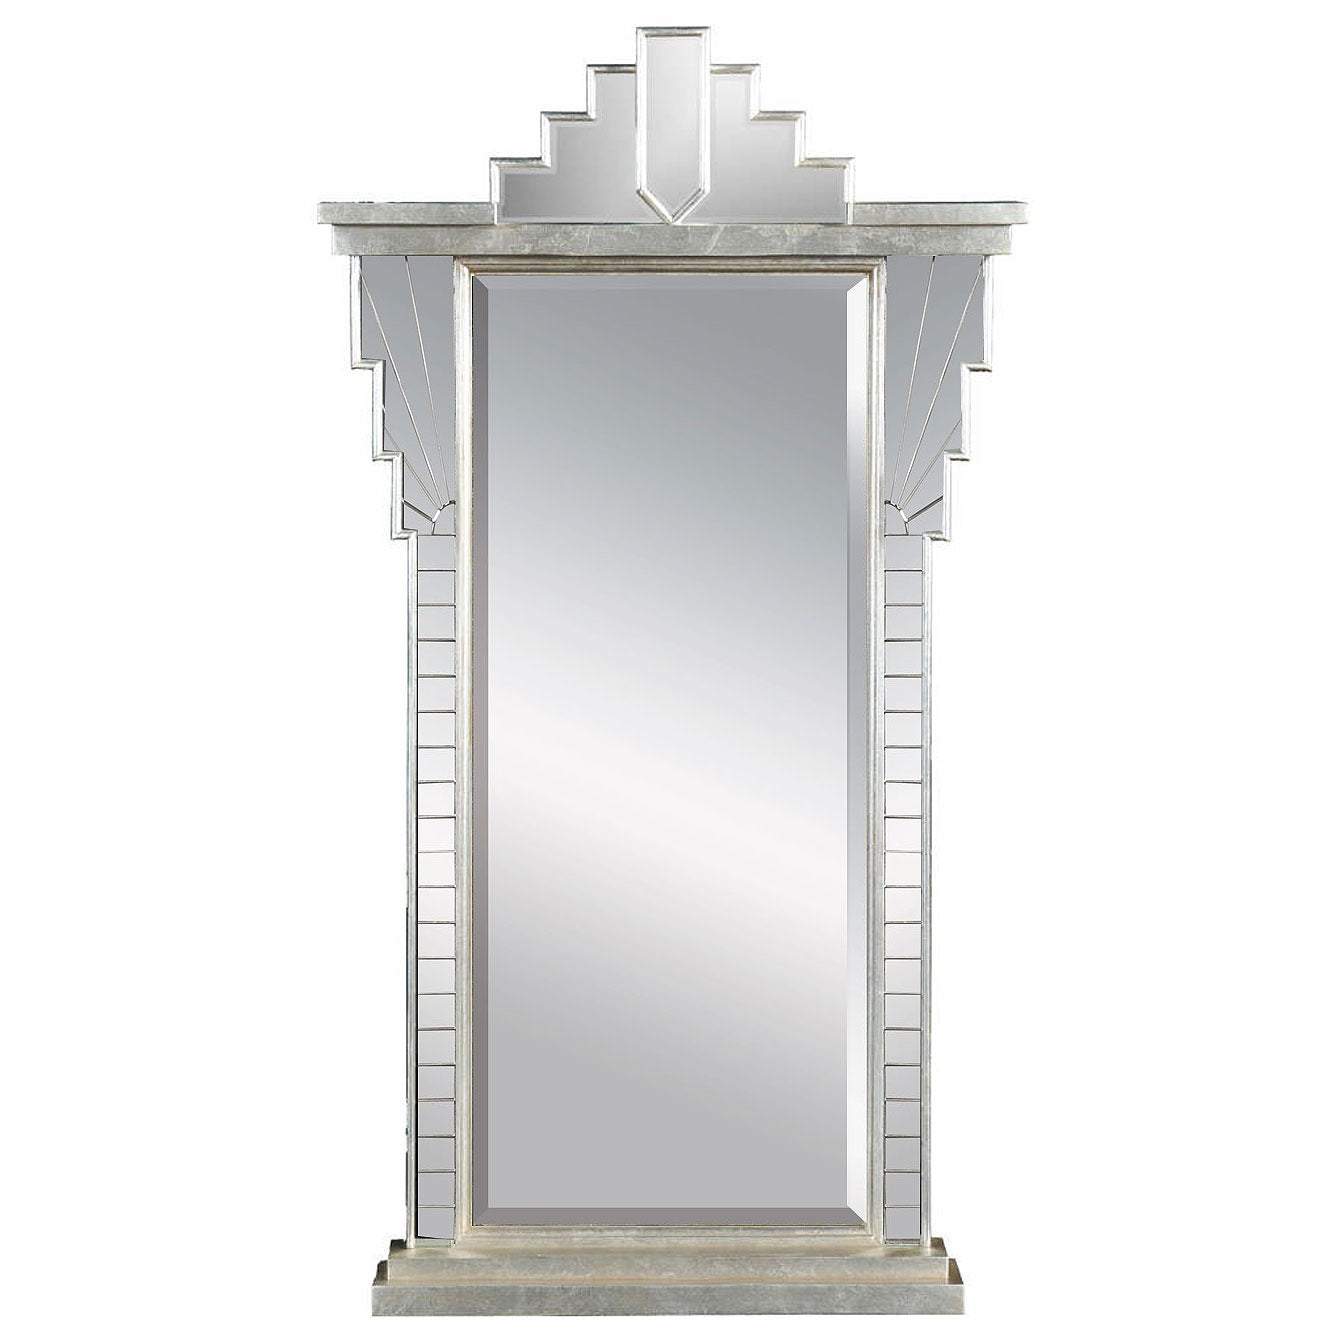 Silver Art Deco style mirror